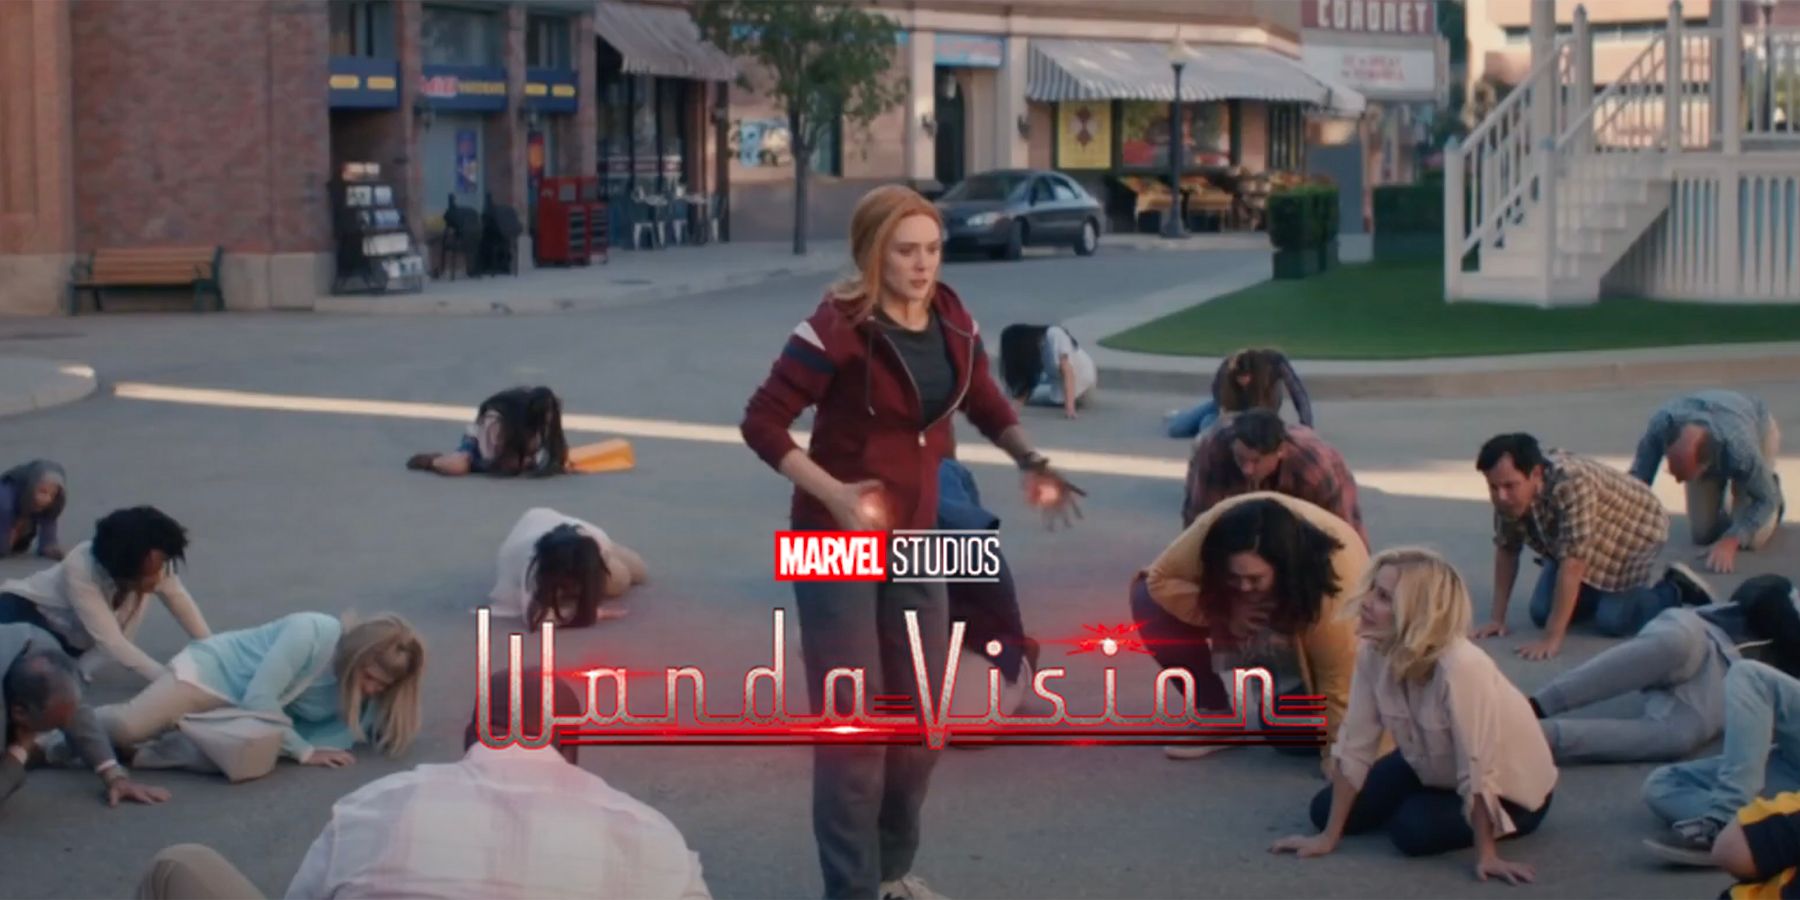 WandaVision Extra Disney Scanned Background Actors